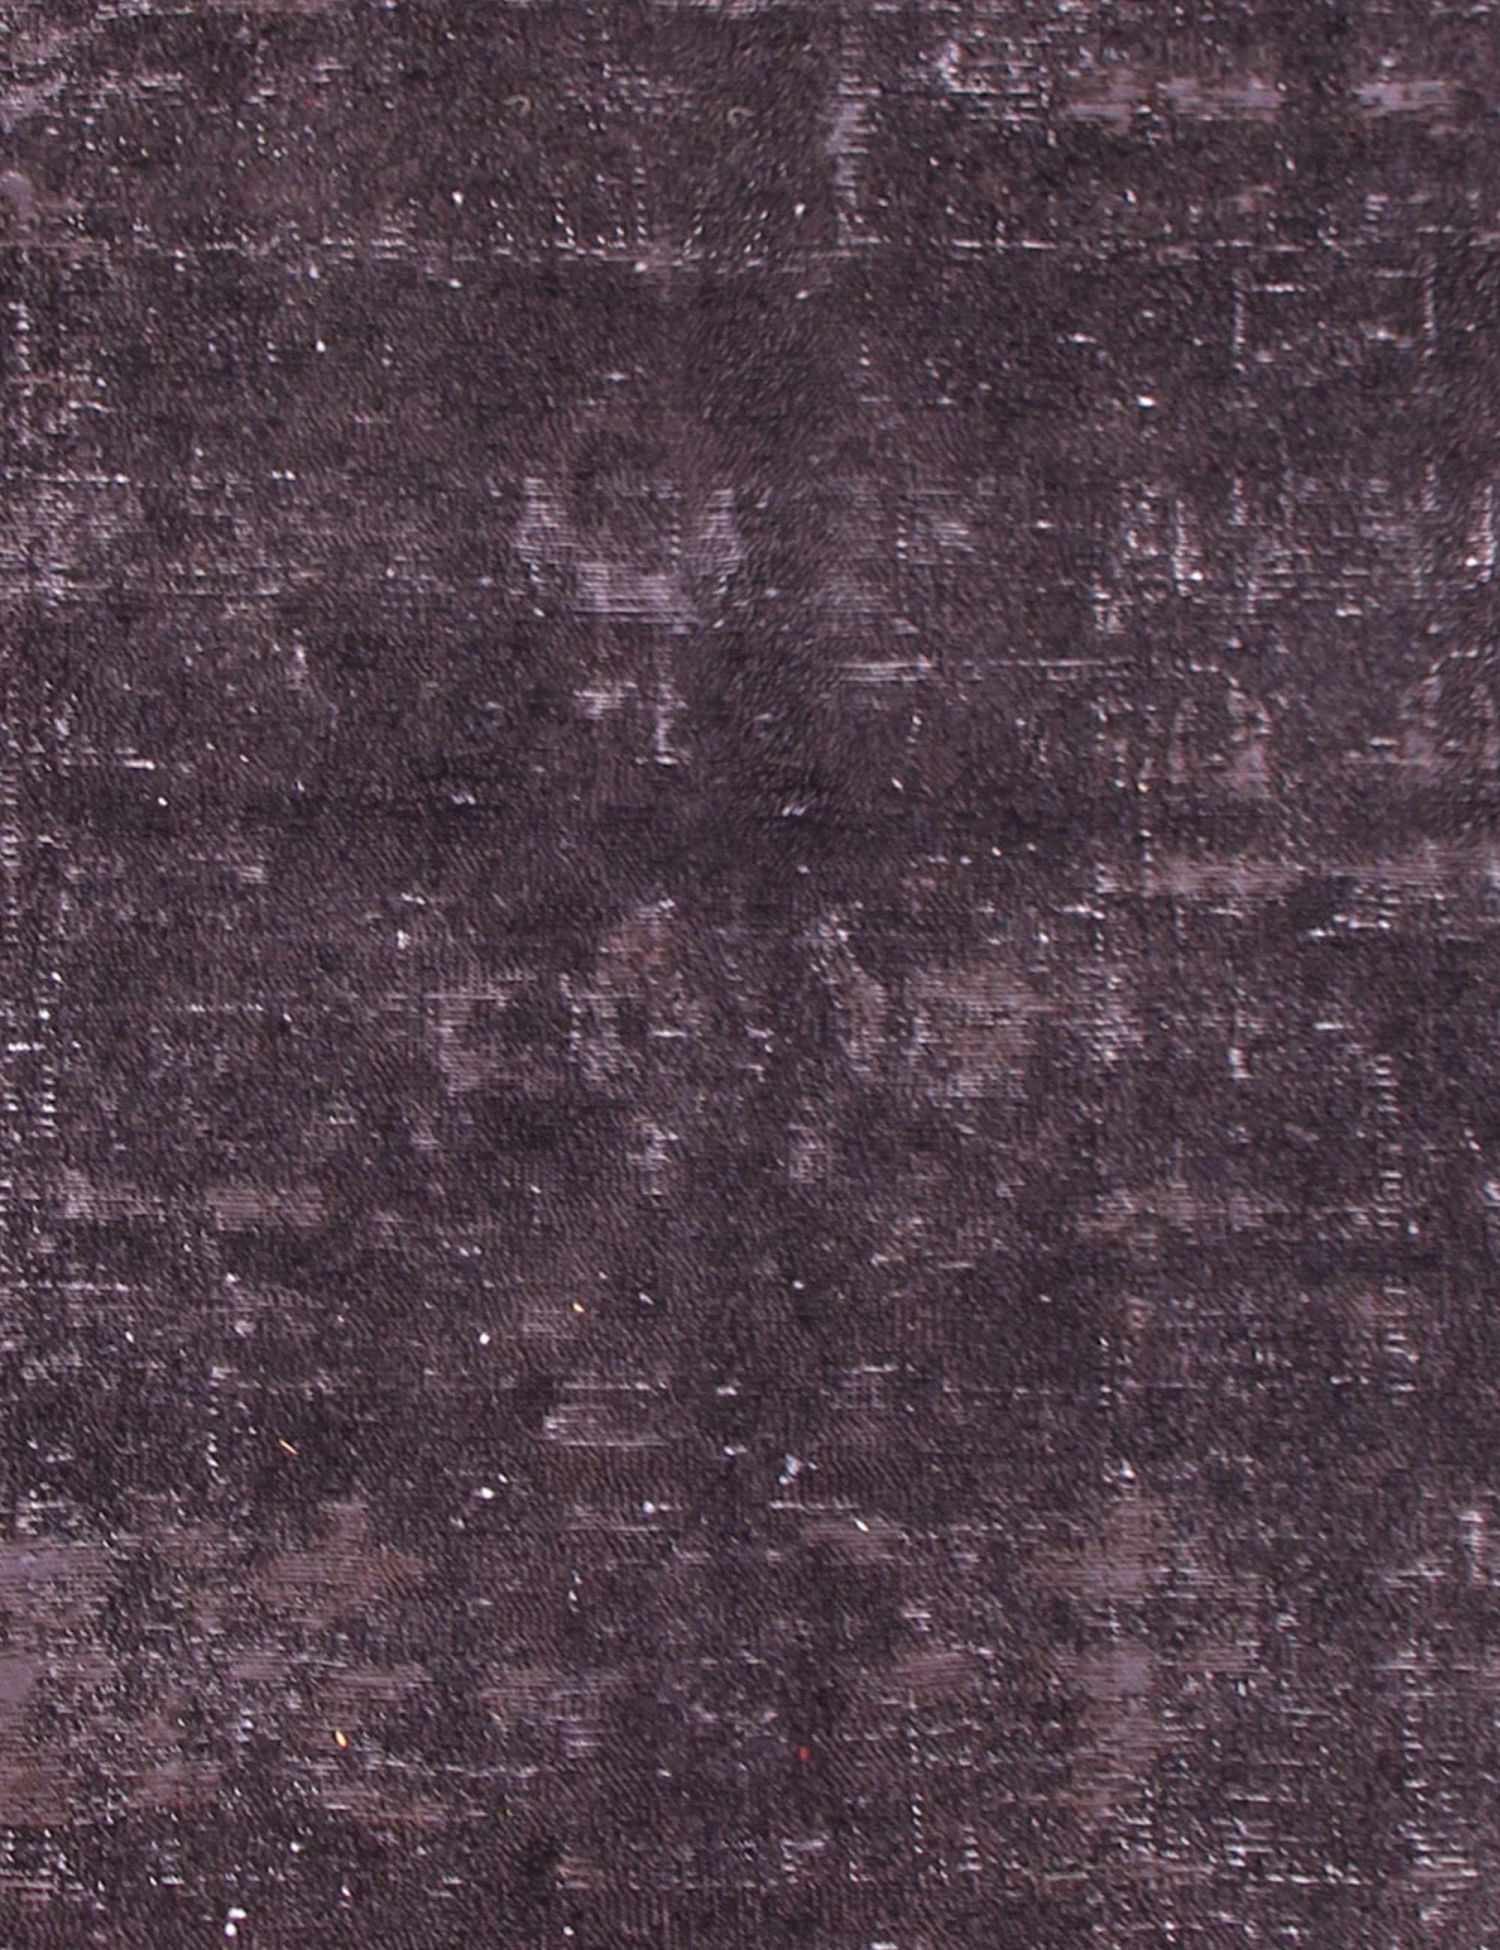 Persian Vintage Carpet  black <br/>253 x 190 cm